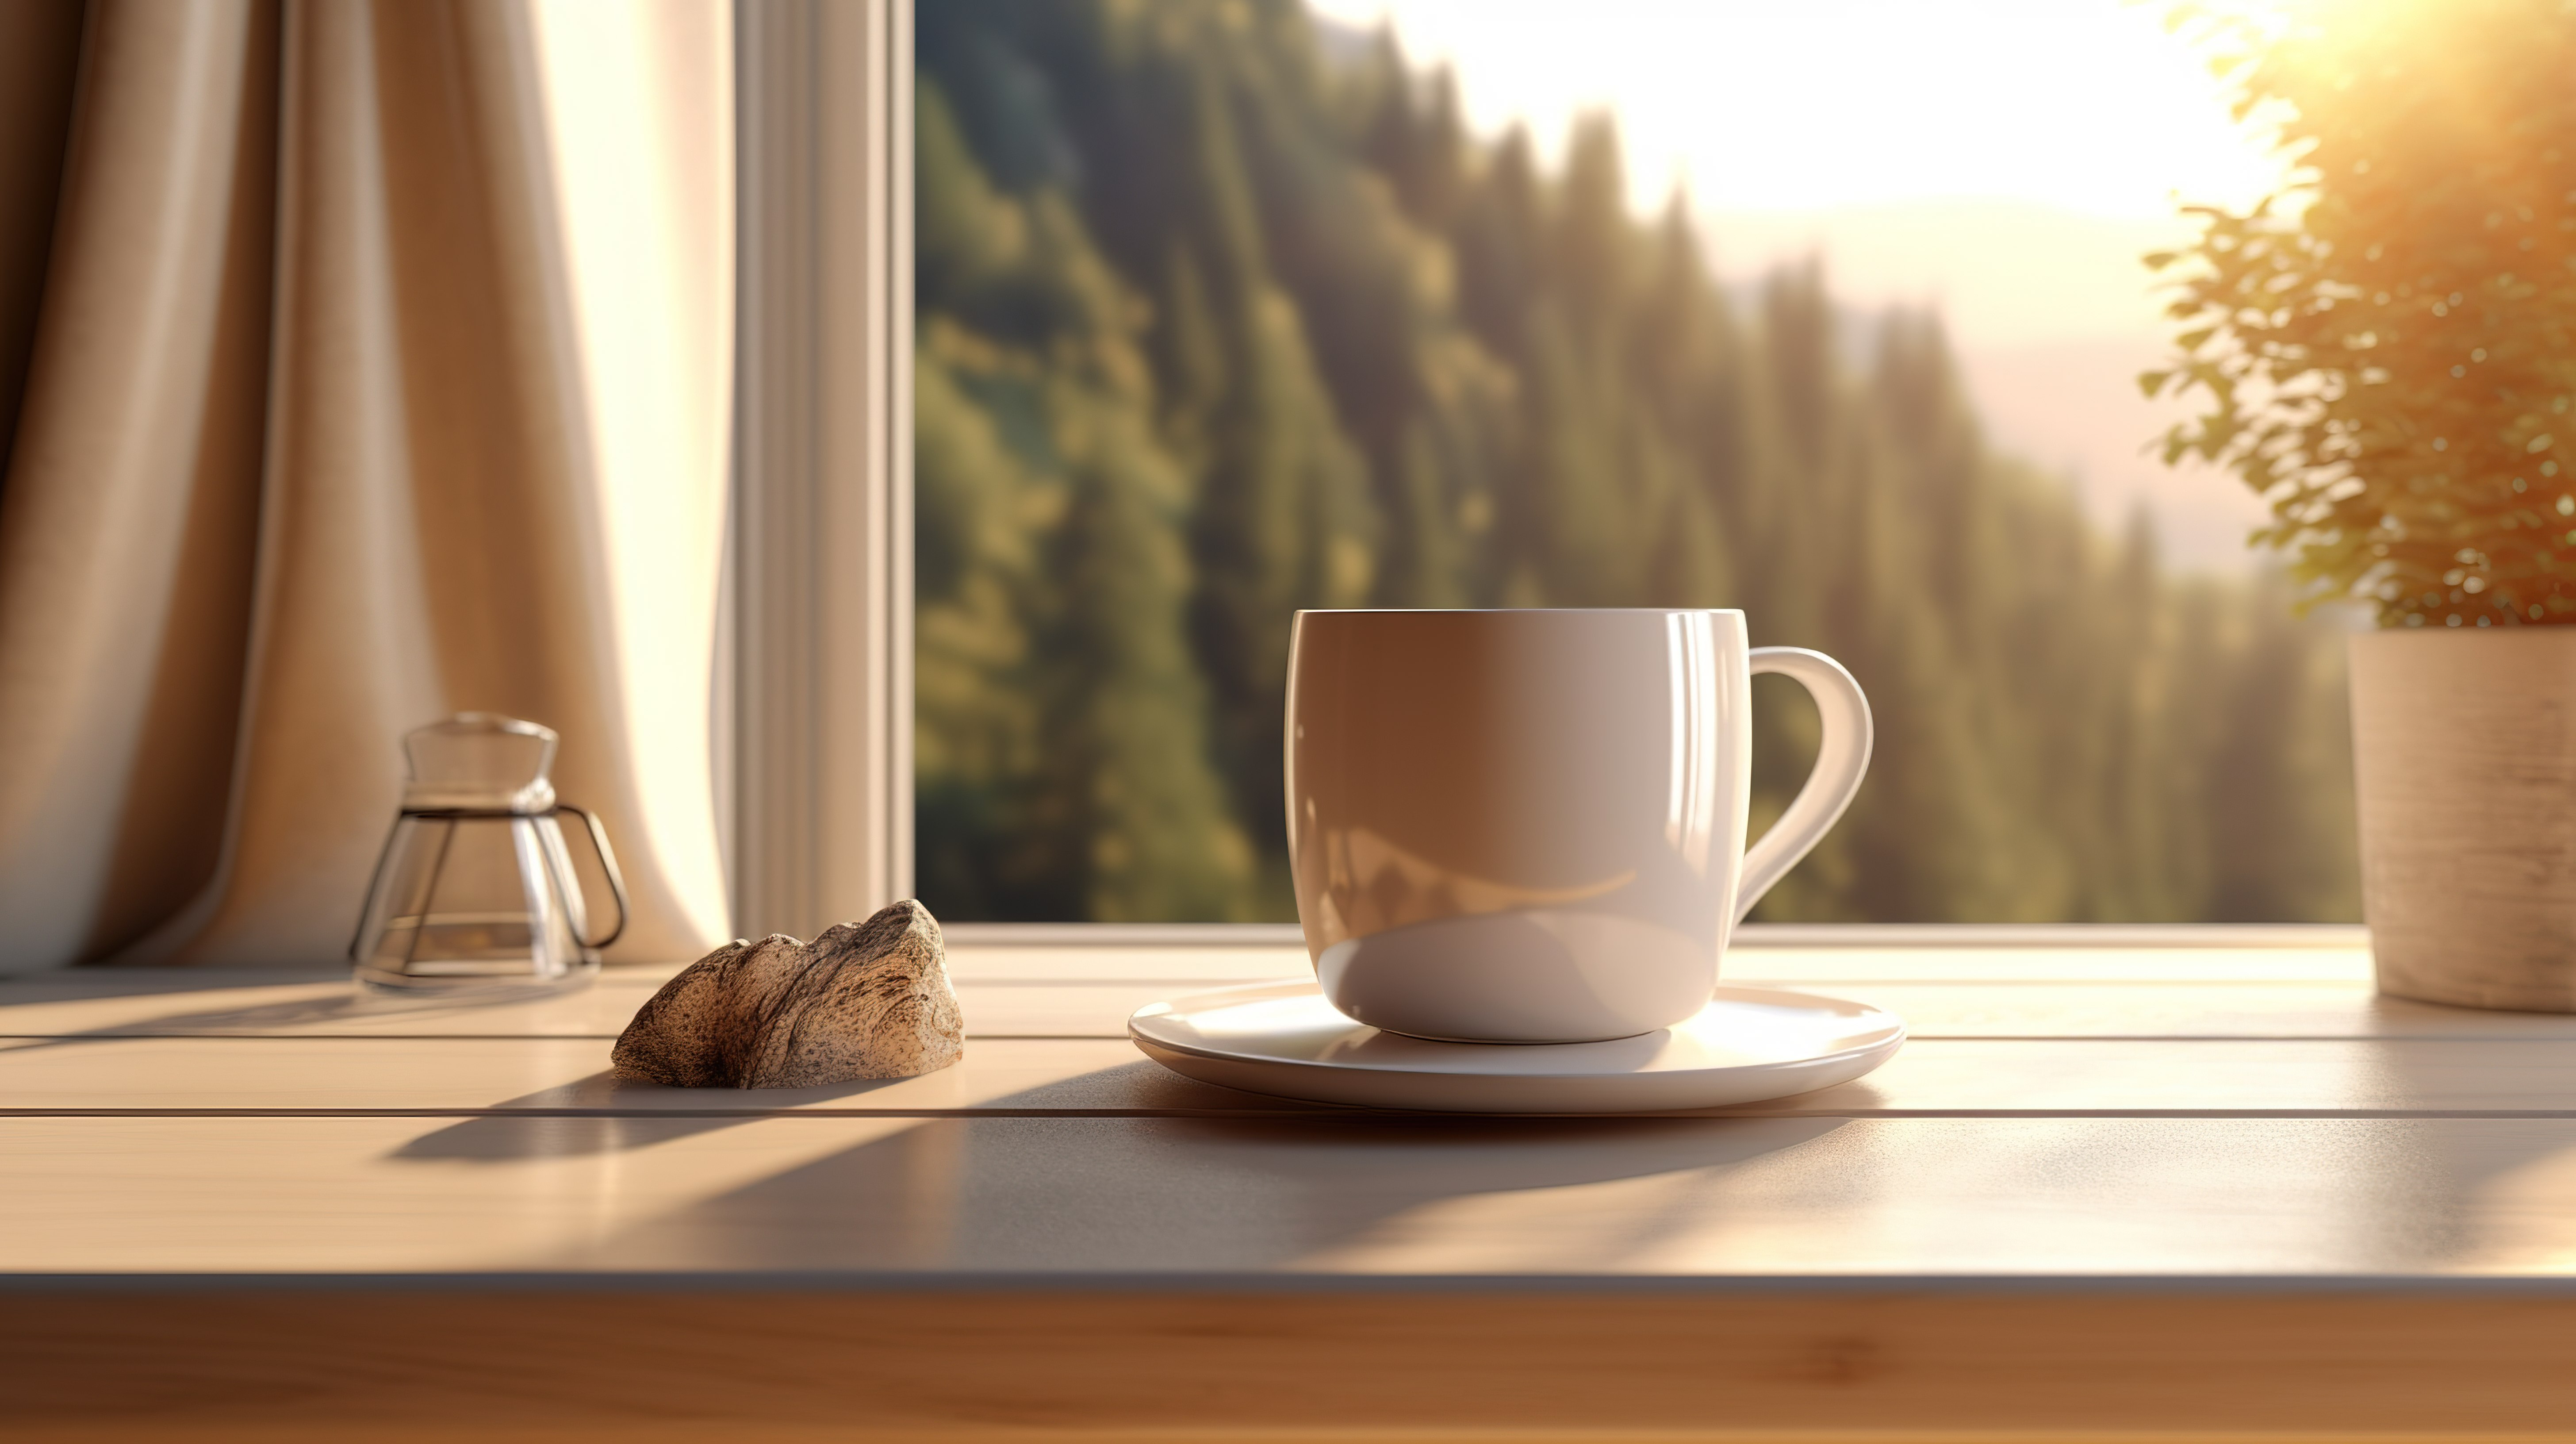 桌面上的咖啡杯，风景秀丽的自然背景 3D 渲染产品展示图片